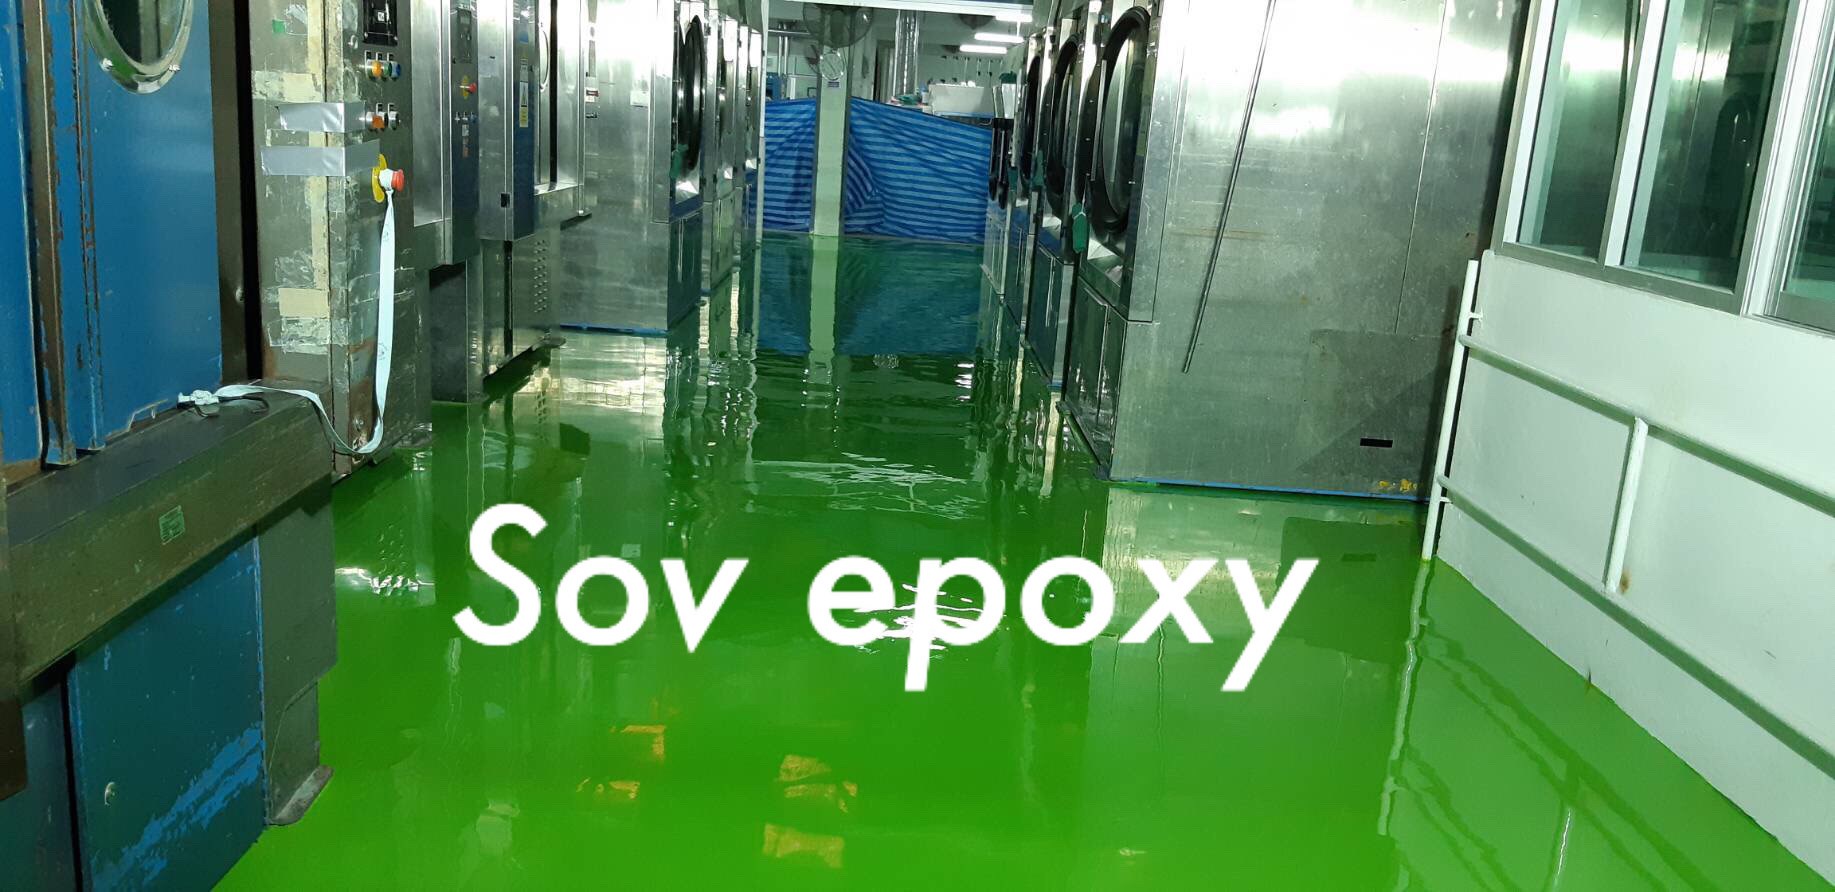 Sov Epoxy ทำพื้นอีพ็อกซี่ พื้นพียู พื้นโรงงาน พื้นสนามกีฬา CH 13